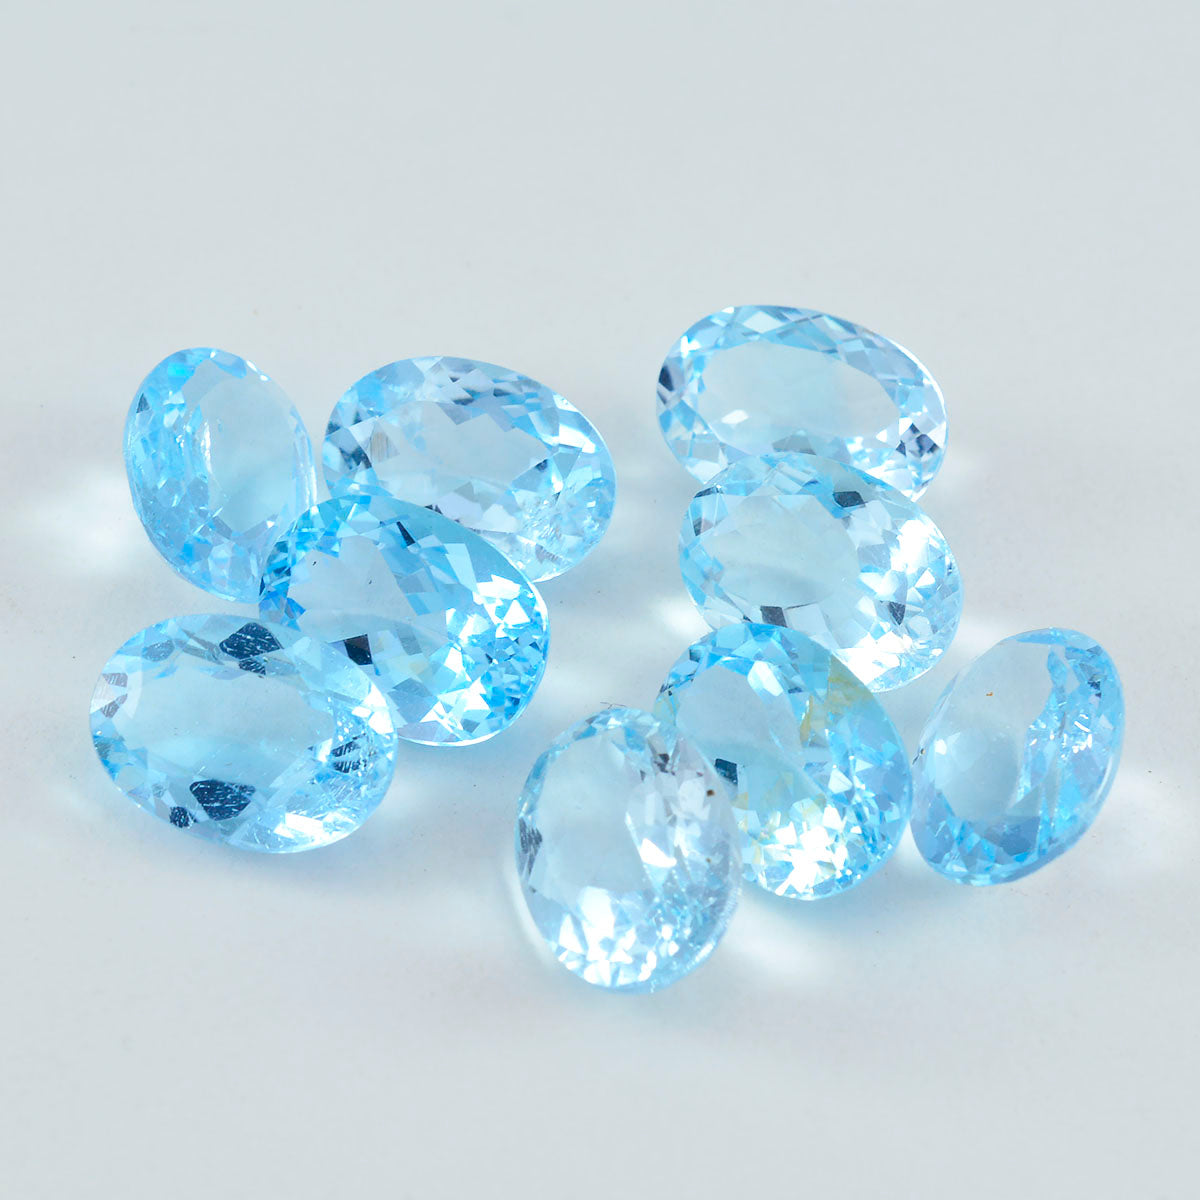 riyogems 1 pezzo di vero topazio blu sfaccettato 8x10 mm di forma ovale, gemme sfuse di buona qualità